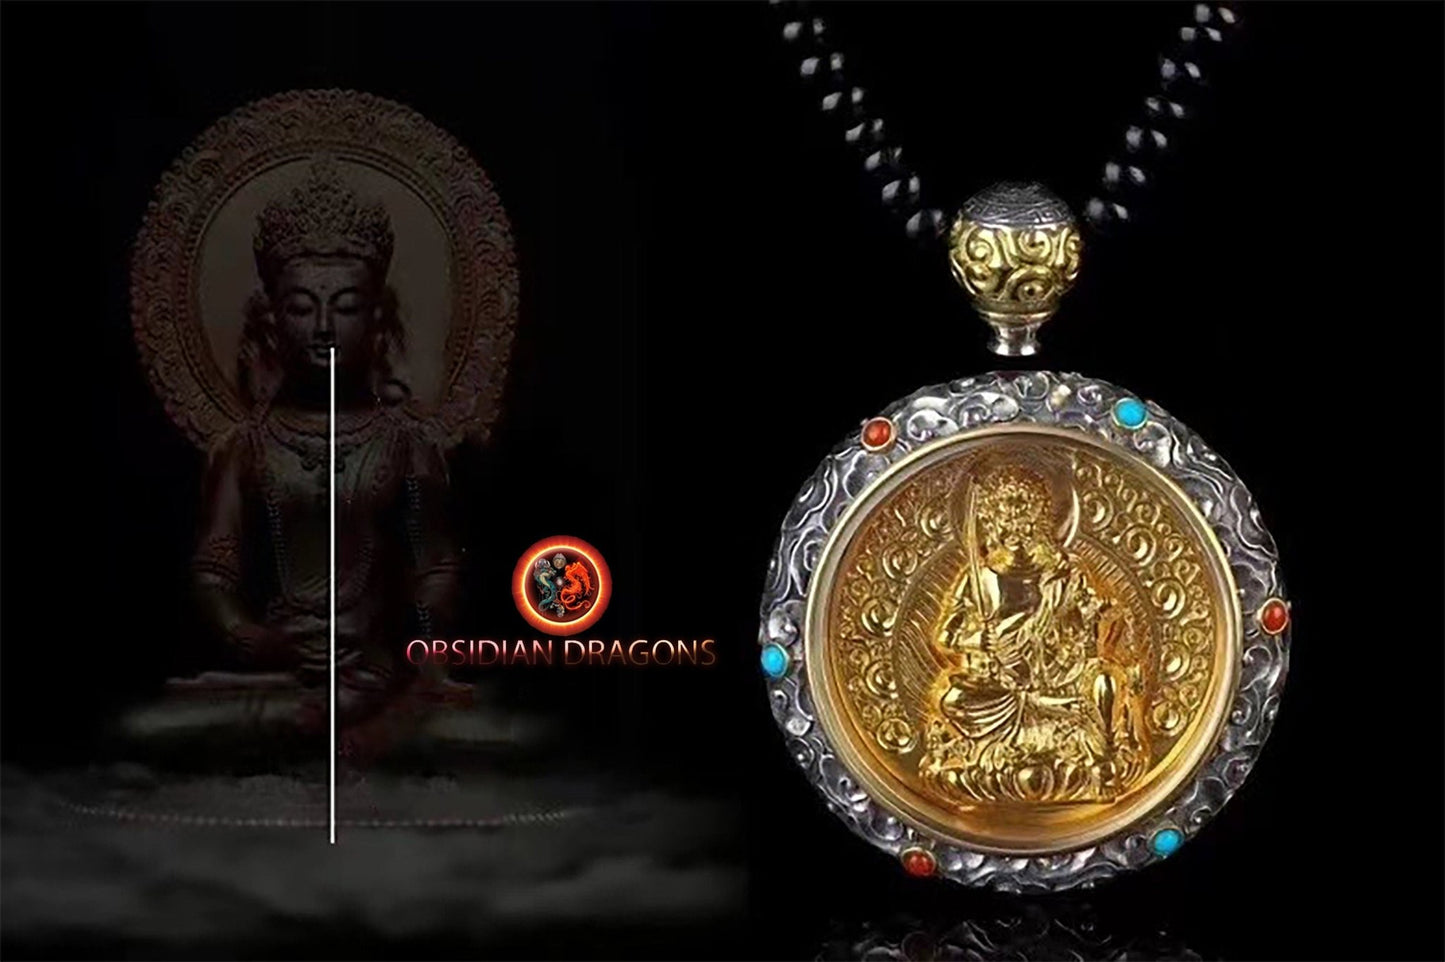 pendentif bouddha, ghau, gau amulette bouddha Acala bouddhisme vajrayana tibetain. Argent 925, plaqué or 24k, deux tailles disponibles - obsidian dragon